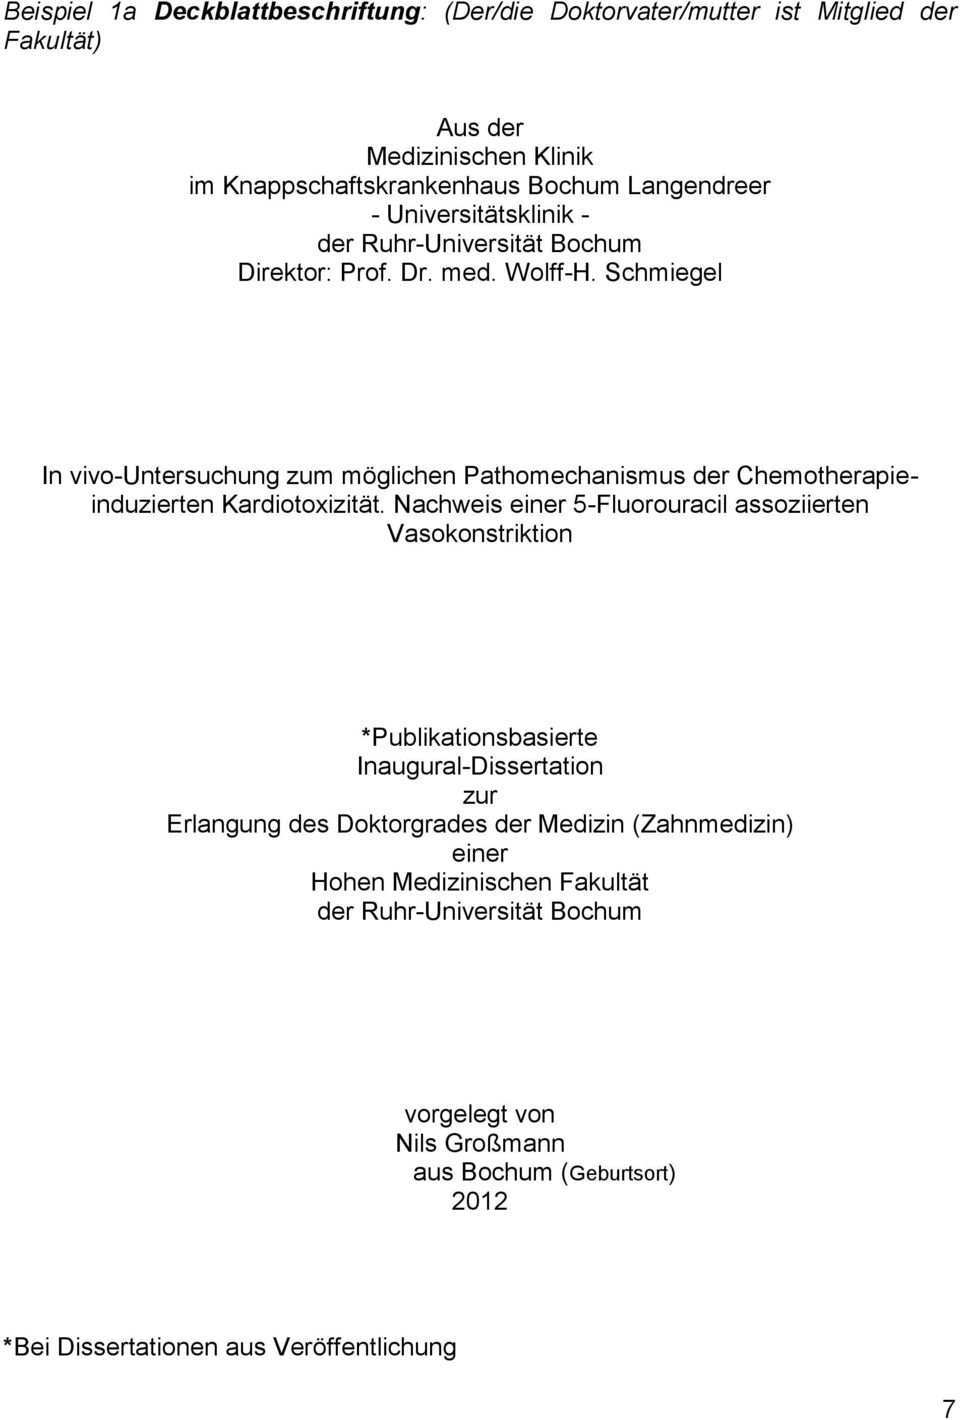 Merkblatt Formvorschrift Zur Abfassung Der Dissertation An Der Medizinischen Fakultat Der Ruhr Universitat Bochum Stand August 2012 Pdf Free Download